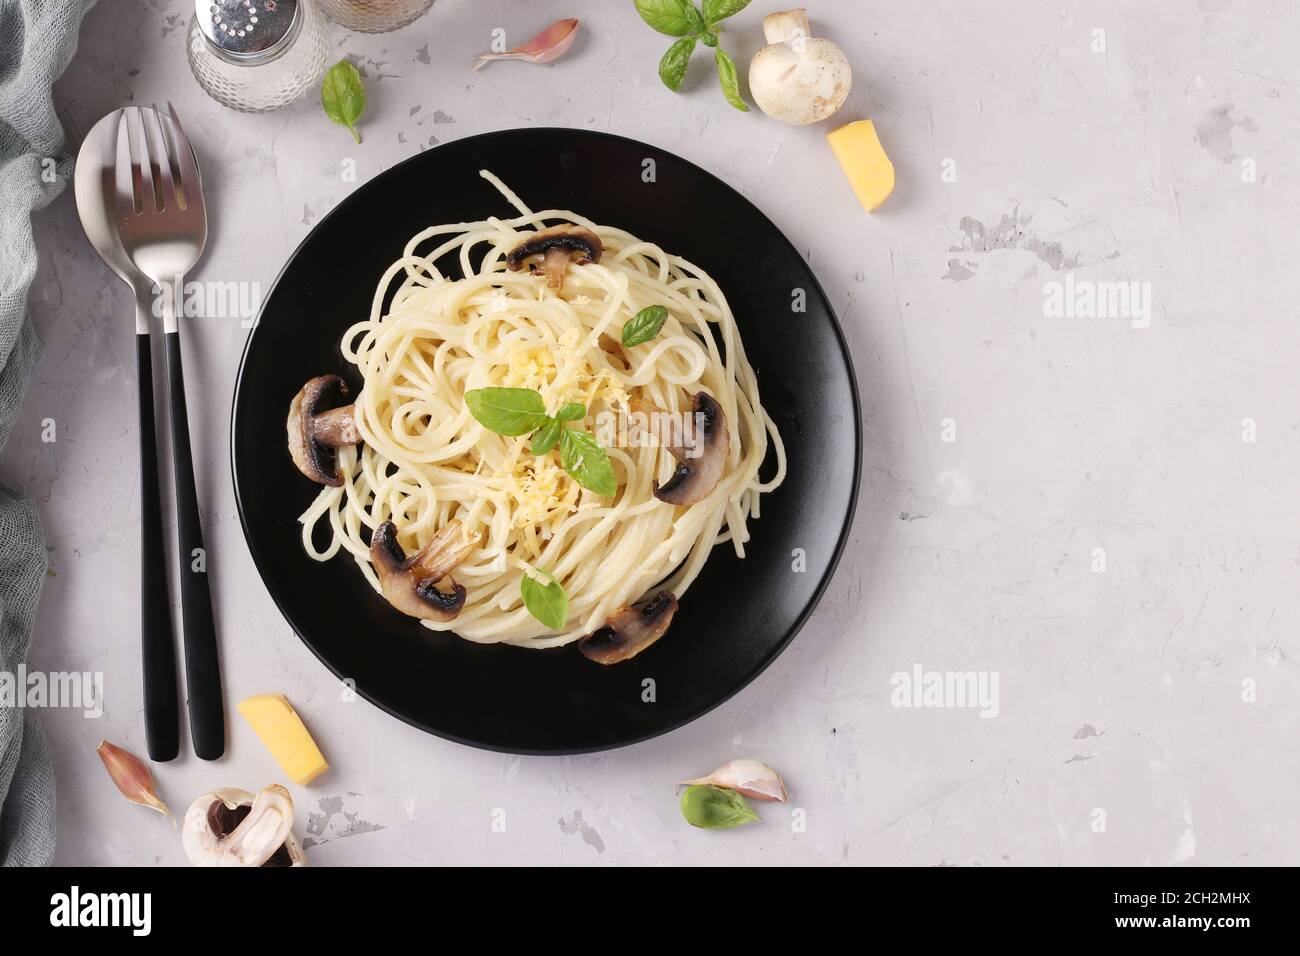 Spaghetti aux champignons et basilic sur plaque noire sur fond gris, vue de dessus Banque D'Images